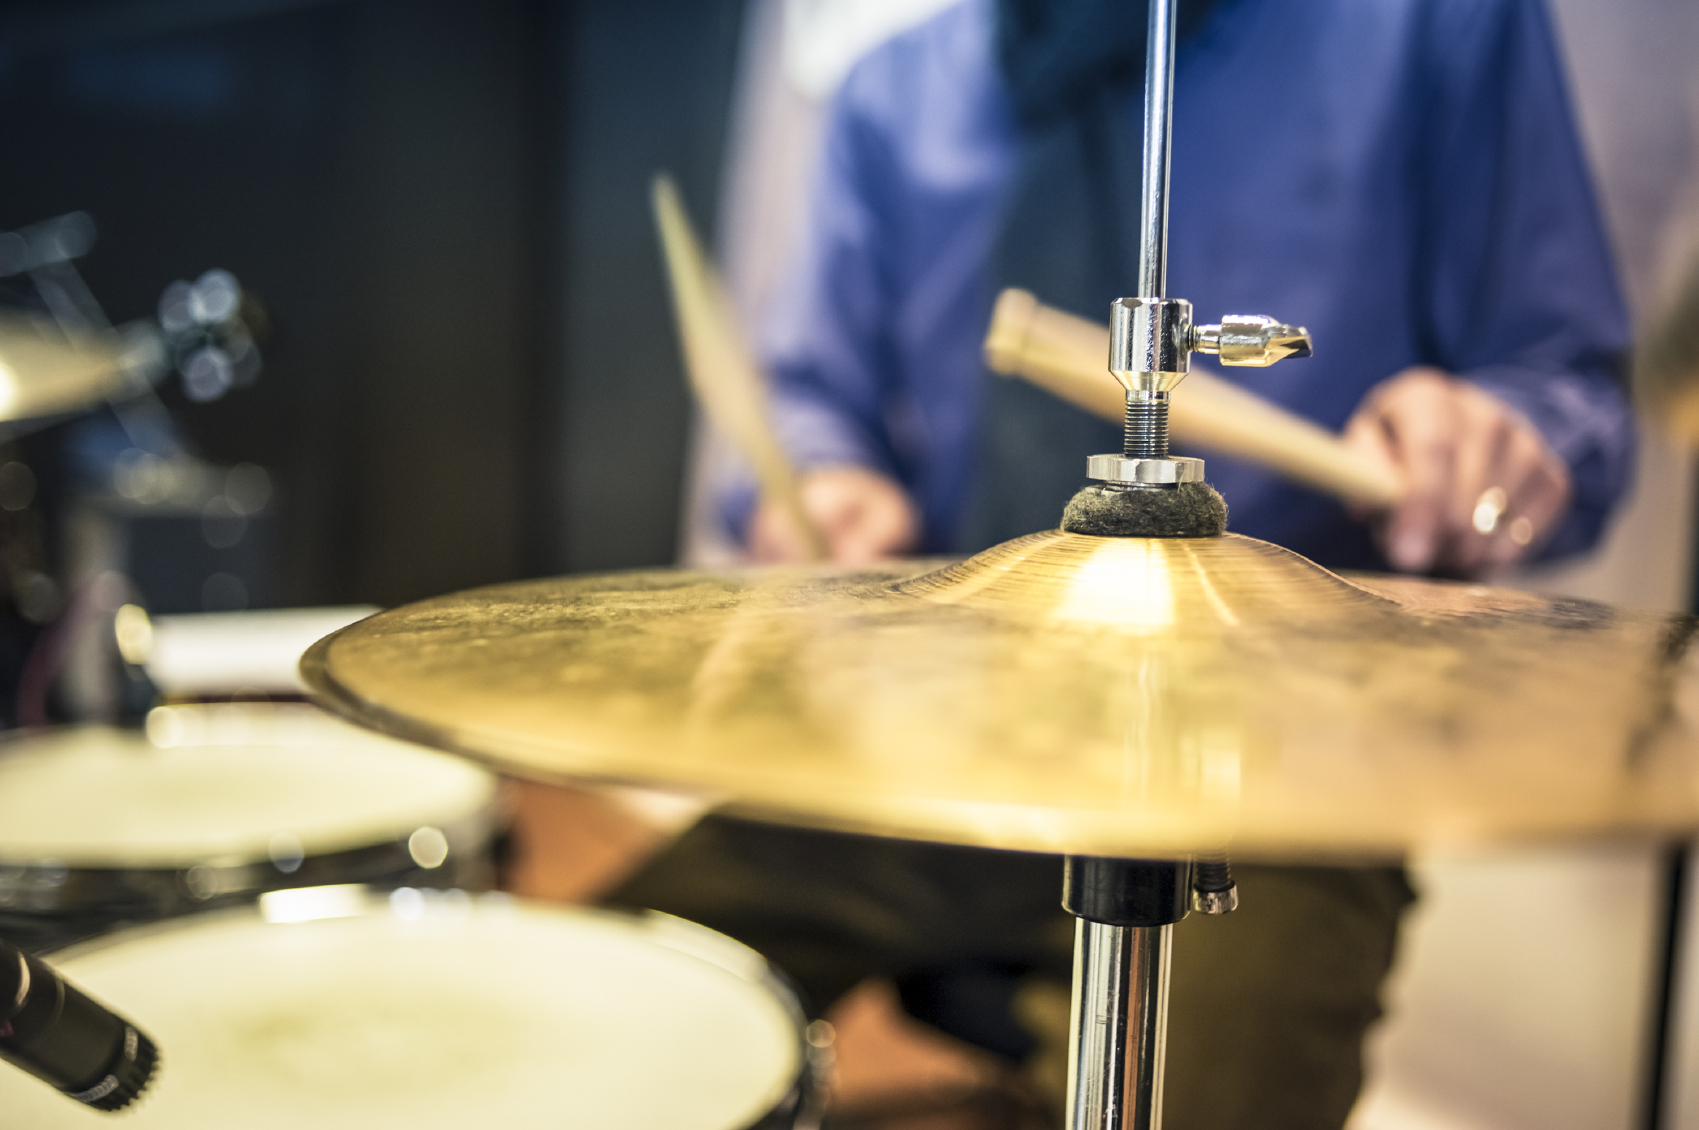 ドラムの練習にオススメな練習用パッド3モデル！ | ABCドラム教室